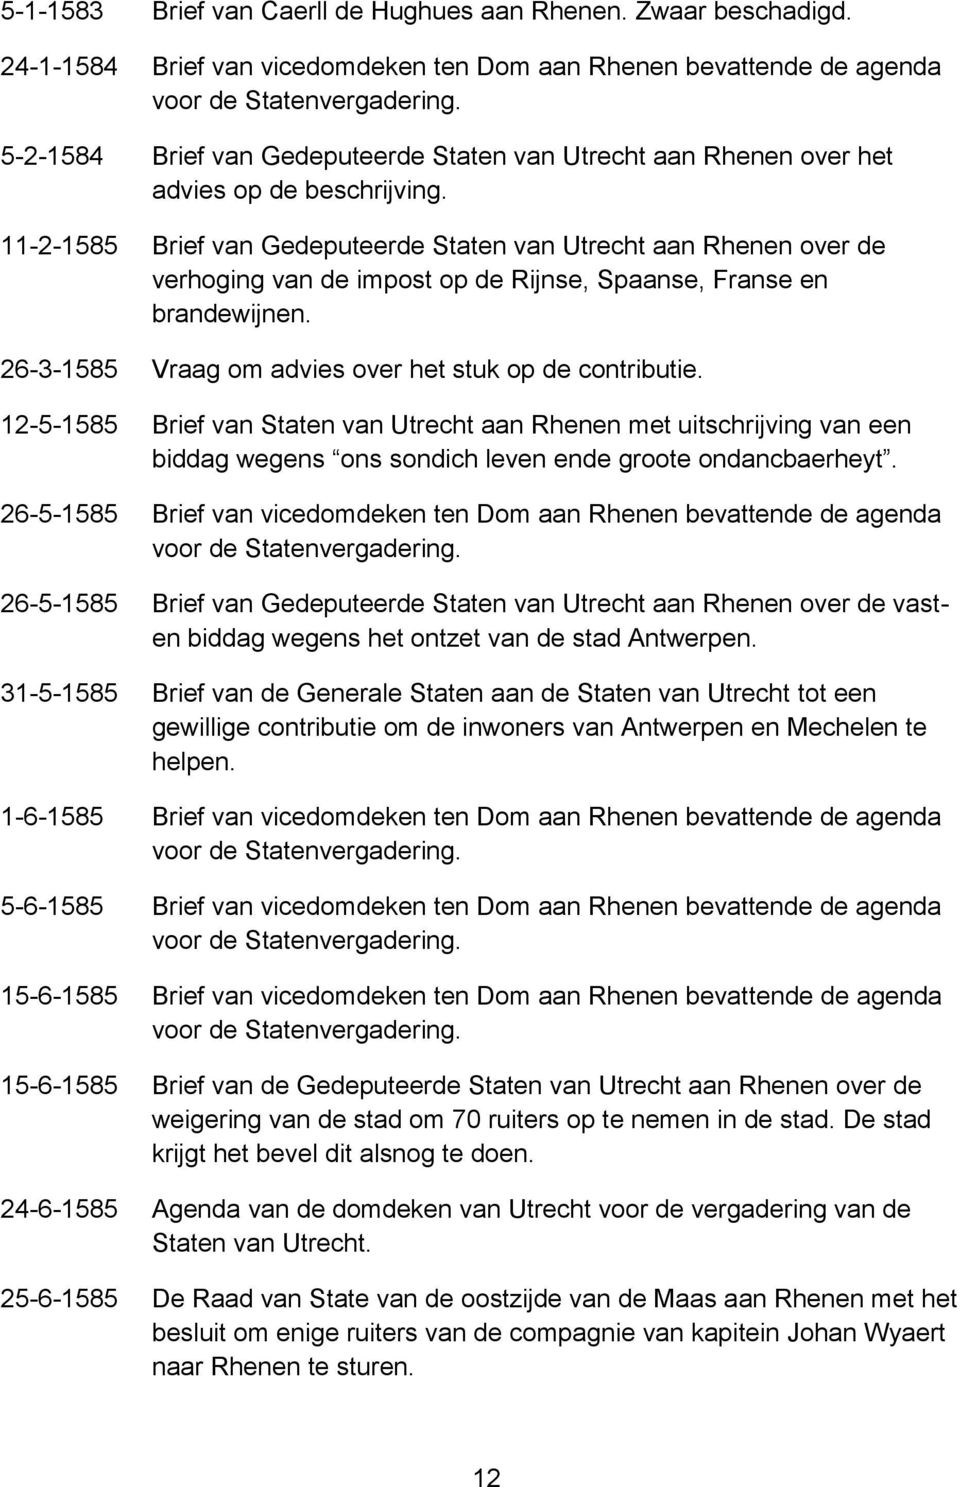 11-2-1585 Brief van Gedeputeerde Staten van Utrecht aan Rhenen over de verhoging van de impost op de Rijnse, Spaanse, Franse en brandewijnen. 26-3-1585 Vraag om advies over het stuk op de contributie.